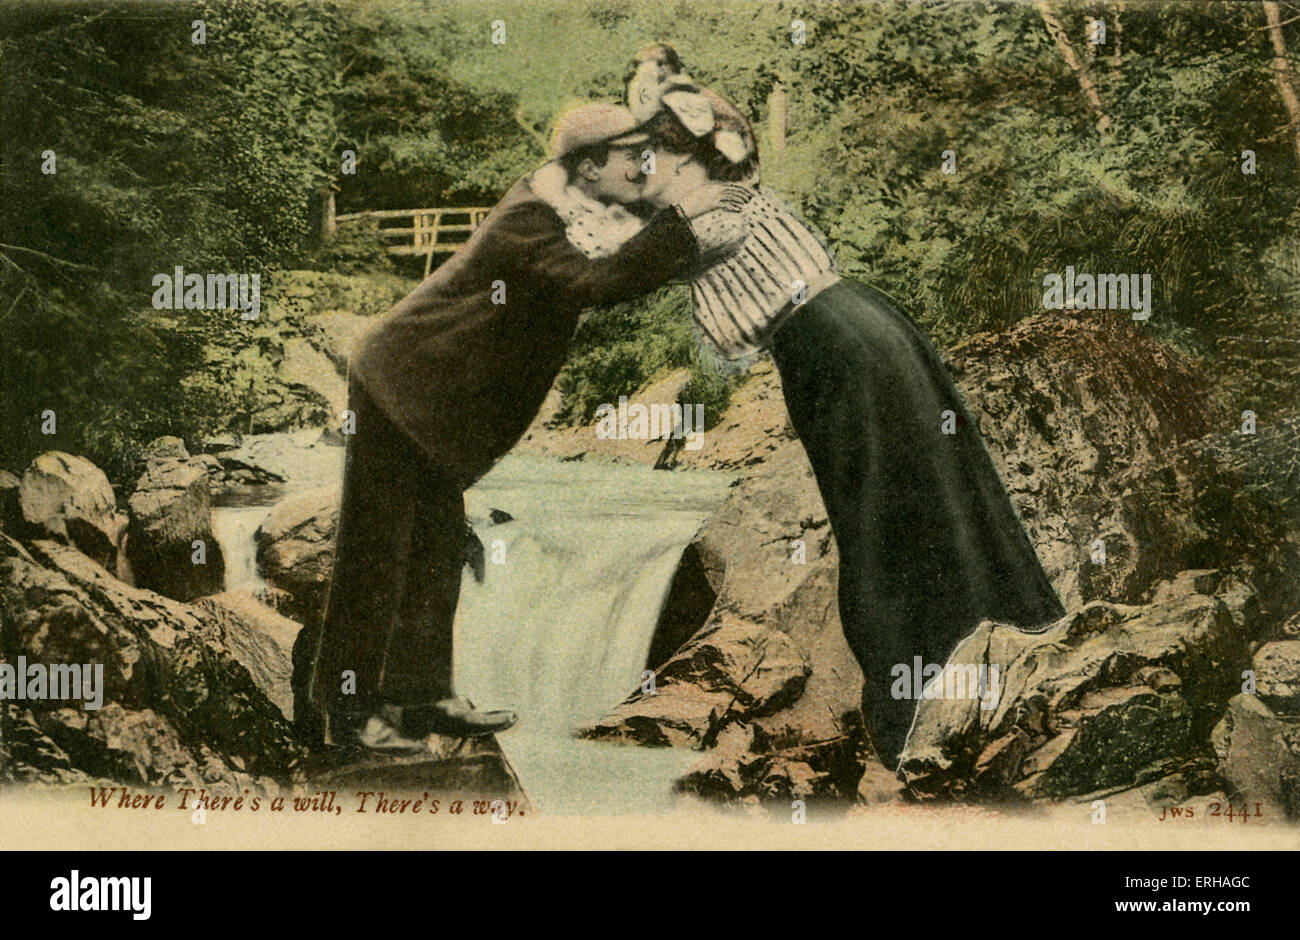 Paar küssen über Wasserfall, nach einer Photographie von J. Welch & Söhnen, Portsmouth. Bildunterschrift lautet "Wo ein Wille ist, ist auch ein Weg". Stockfoto